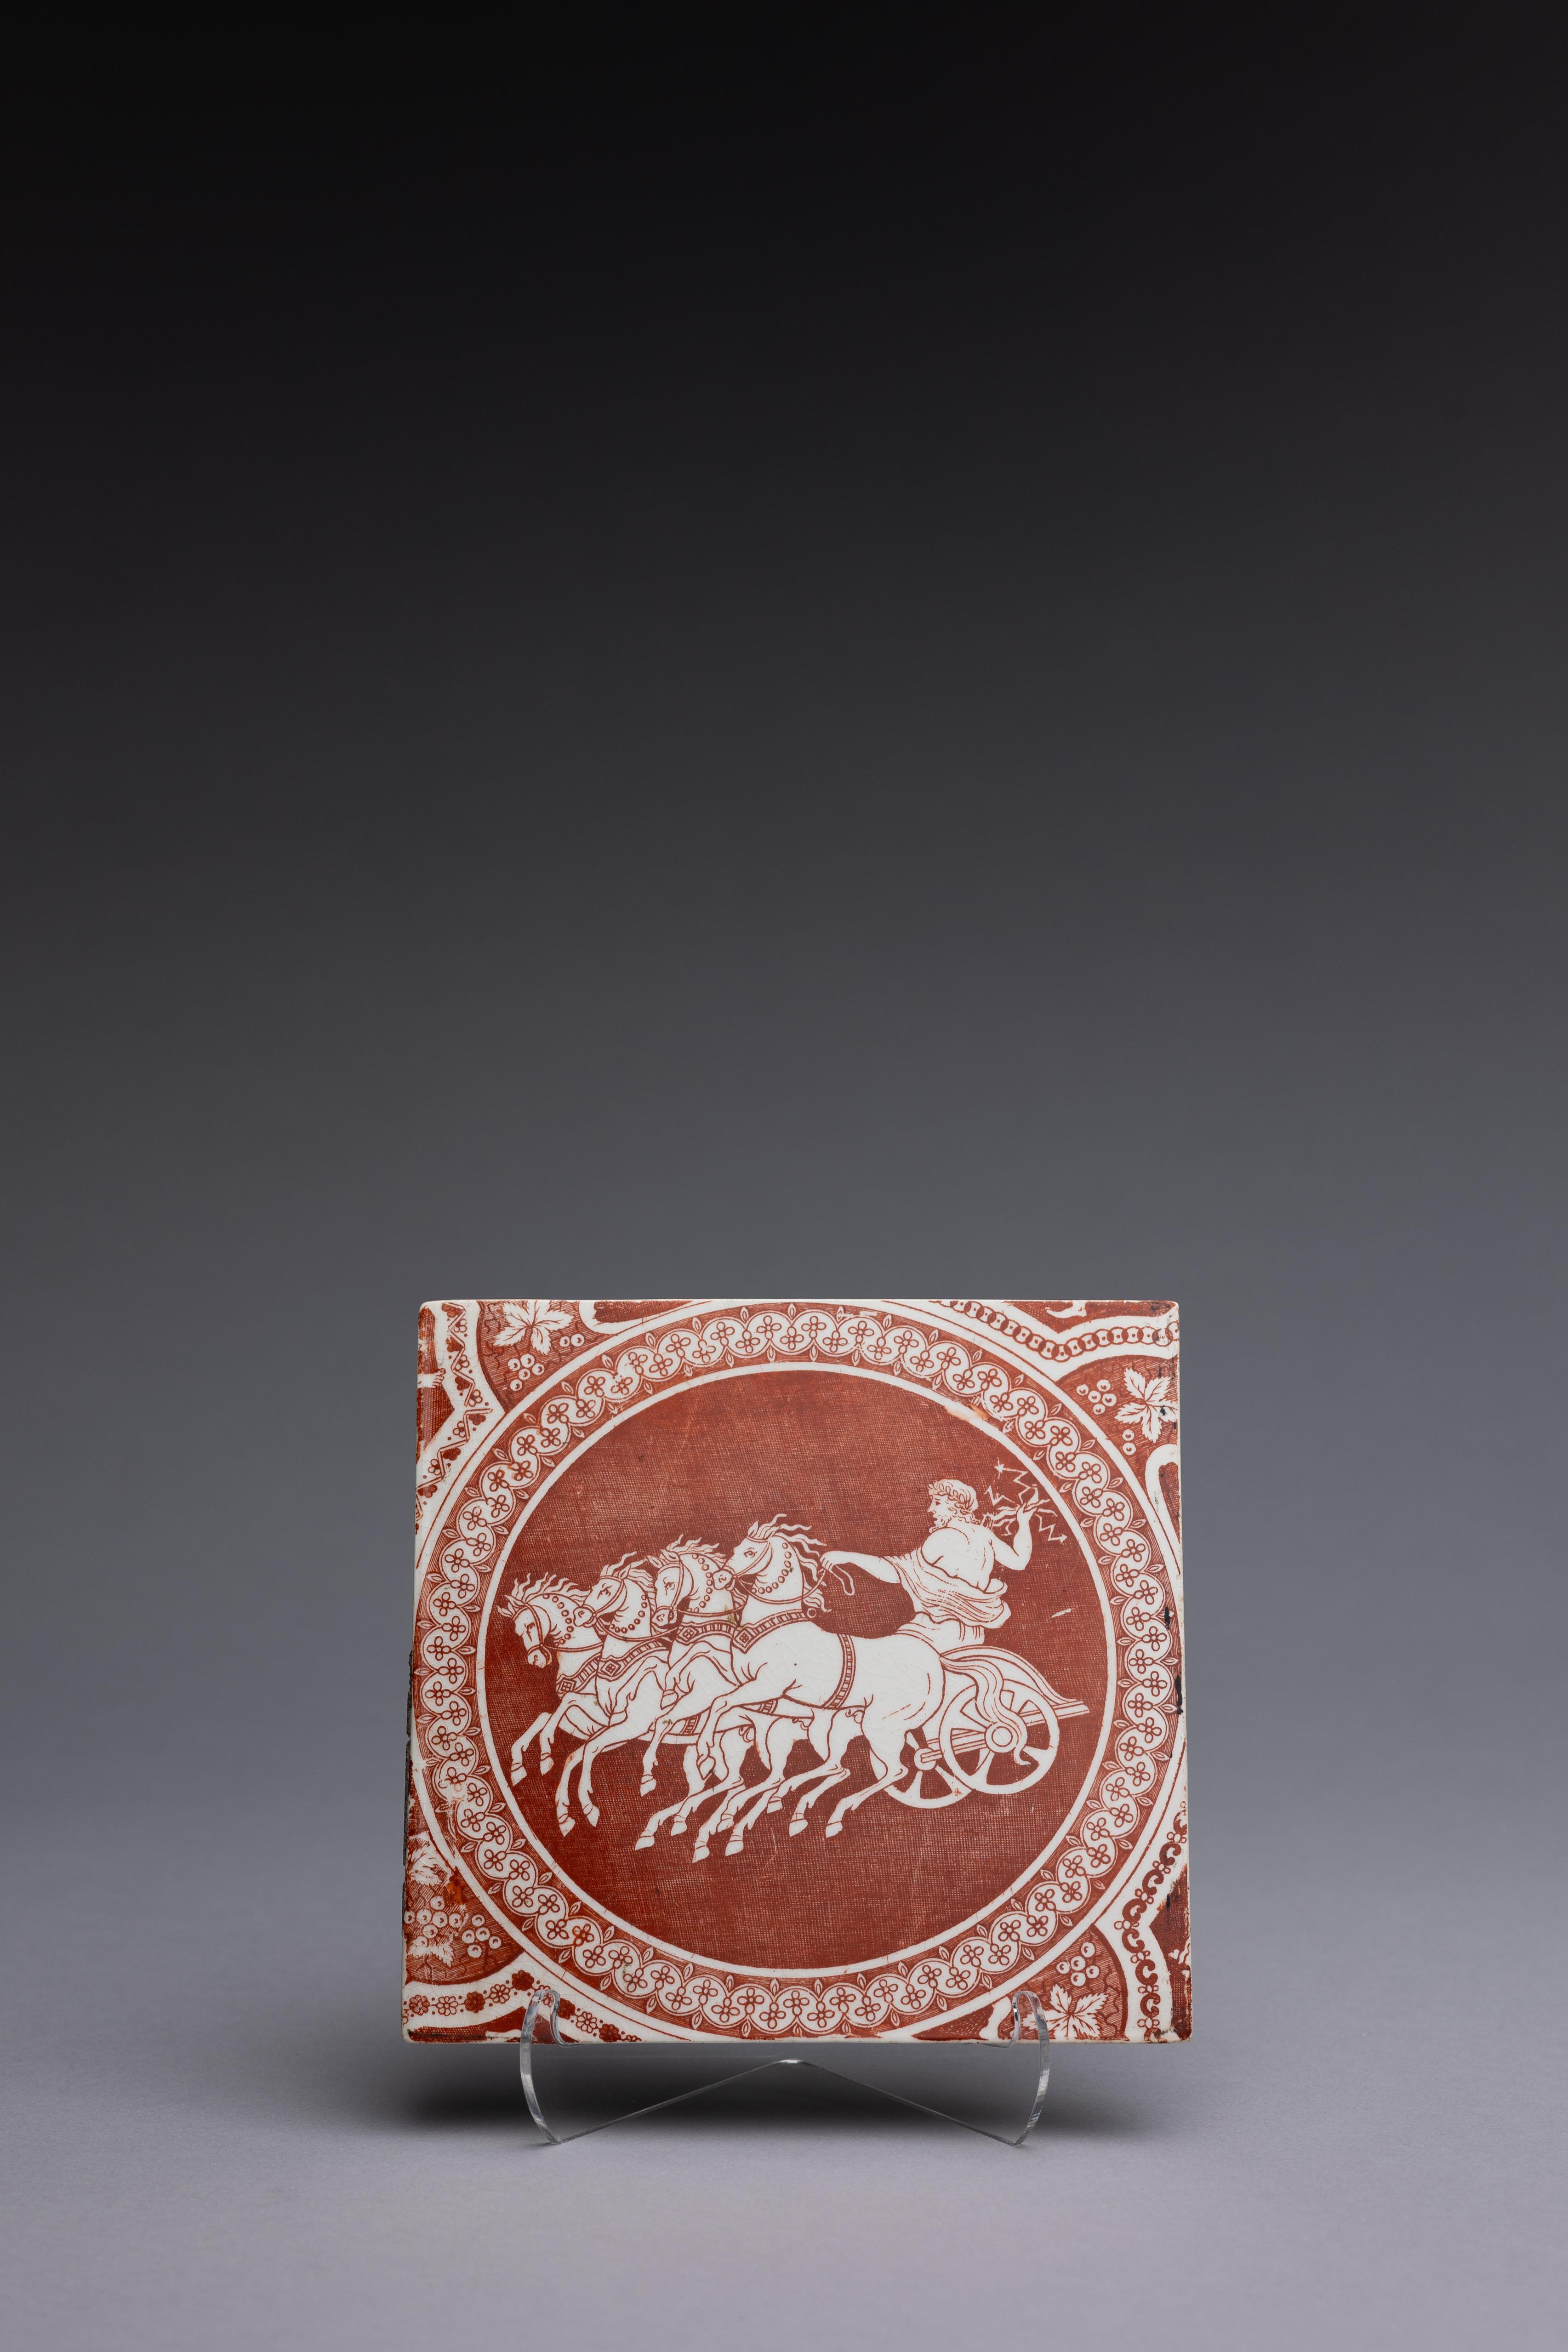 Carreau de faïence rouge néoclassique fabriqué par Spode entre 1806 et 1810, avec le motif 